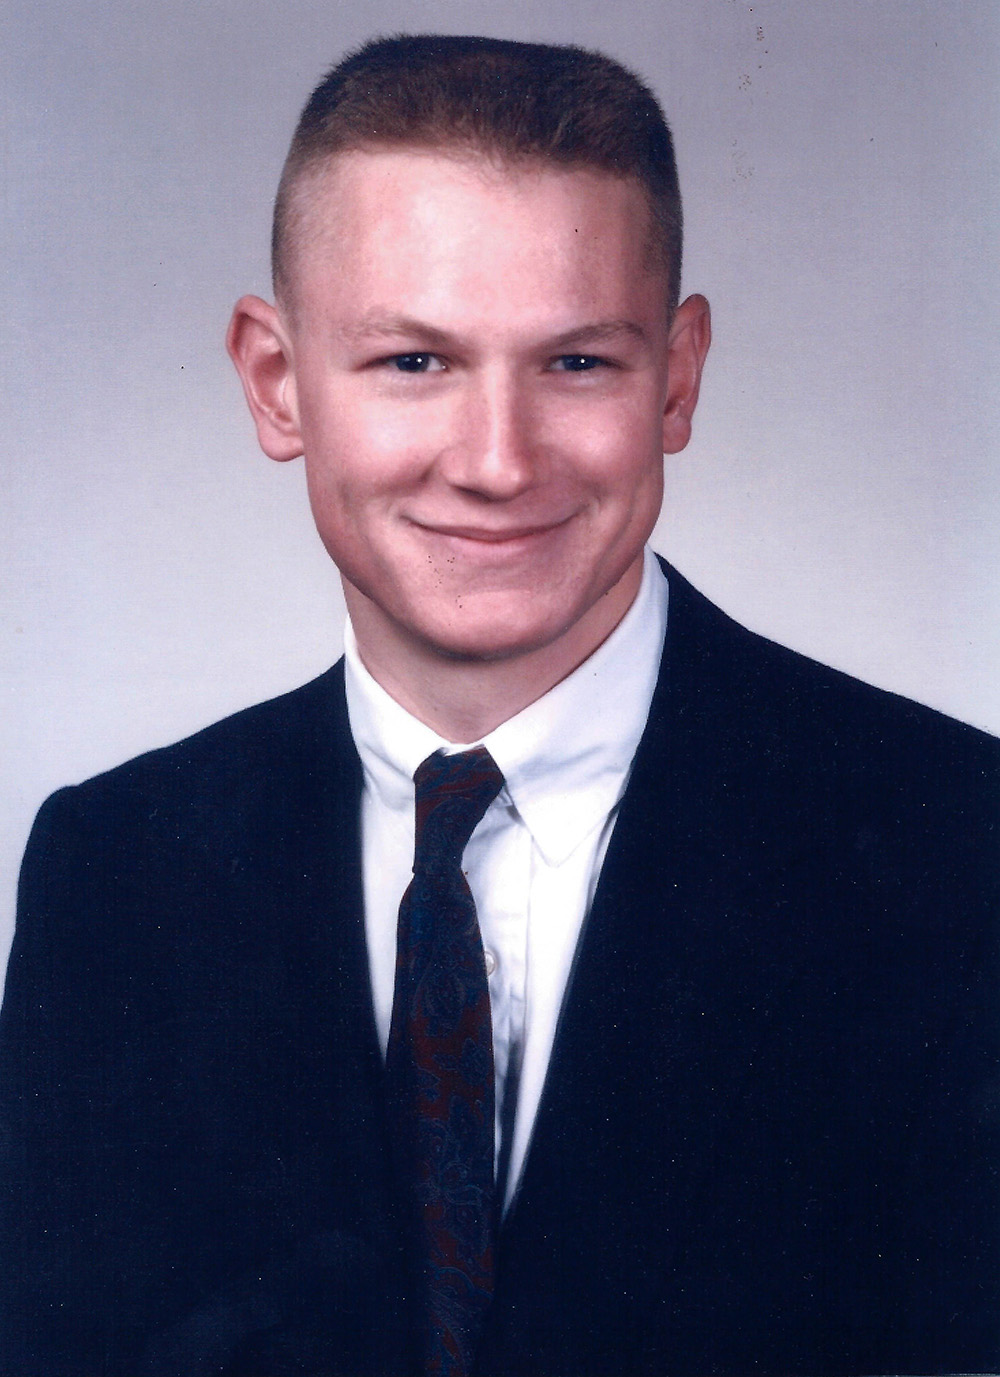 Seth Folsom in 1994, near his own graduation. (Image courtesy Seth Folsom)